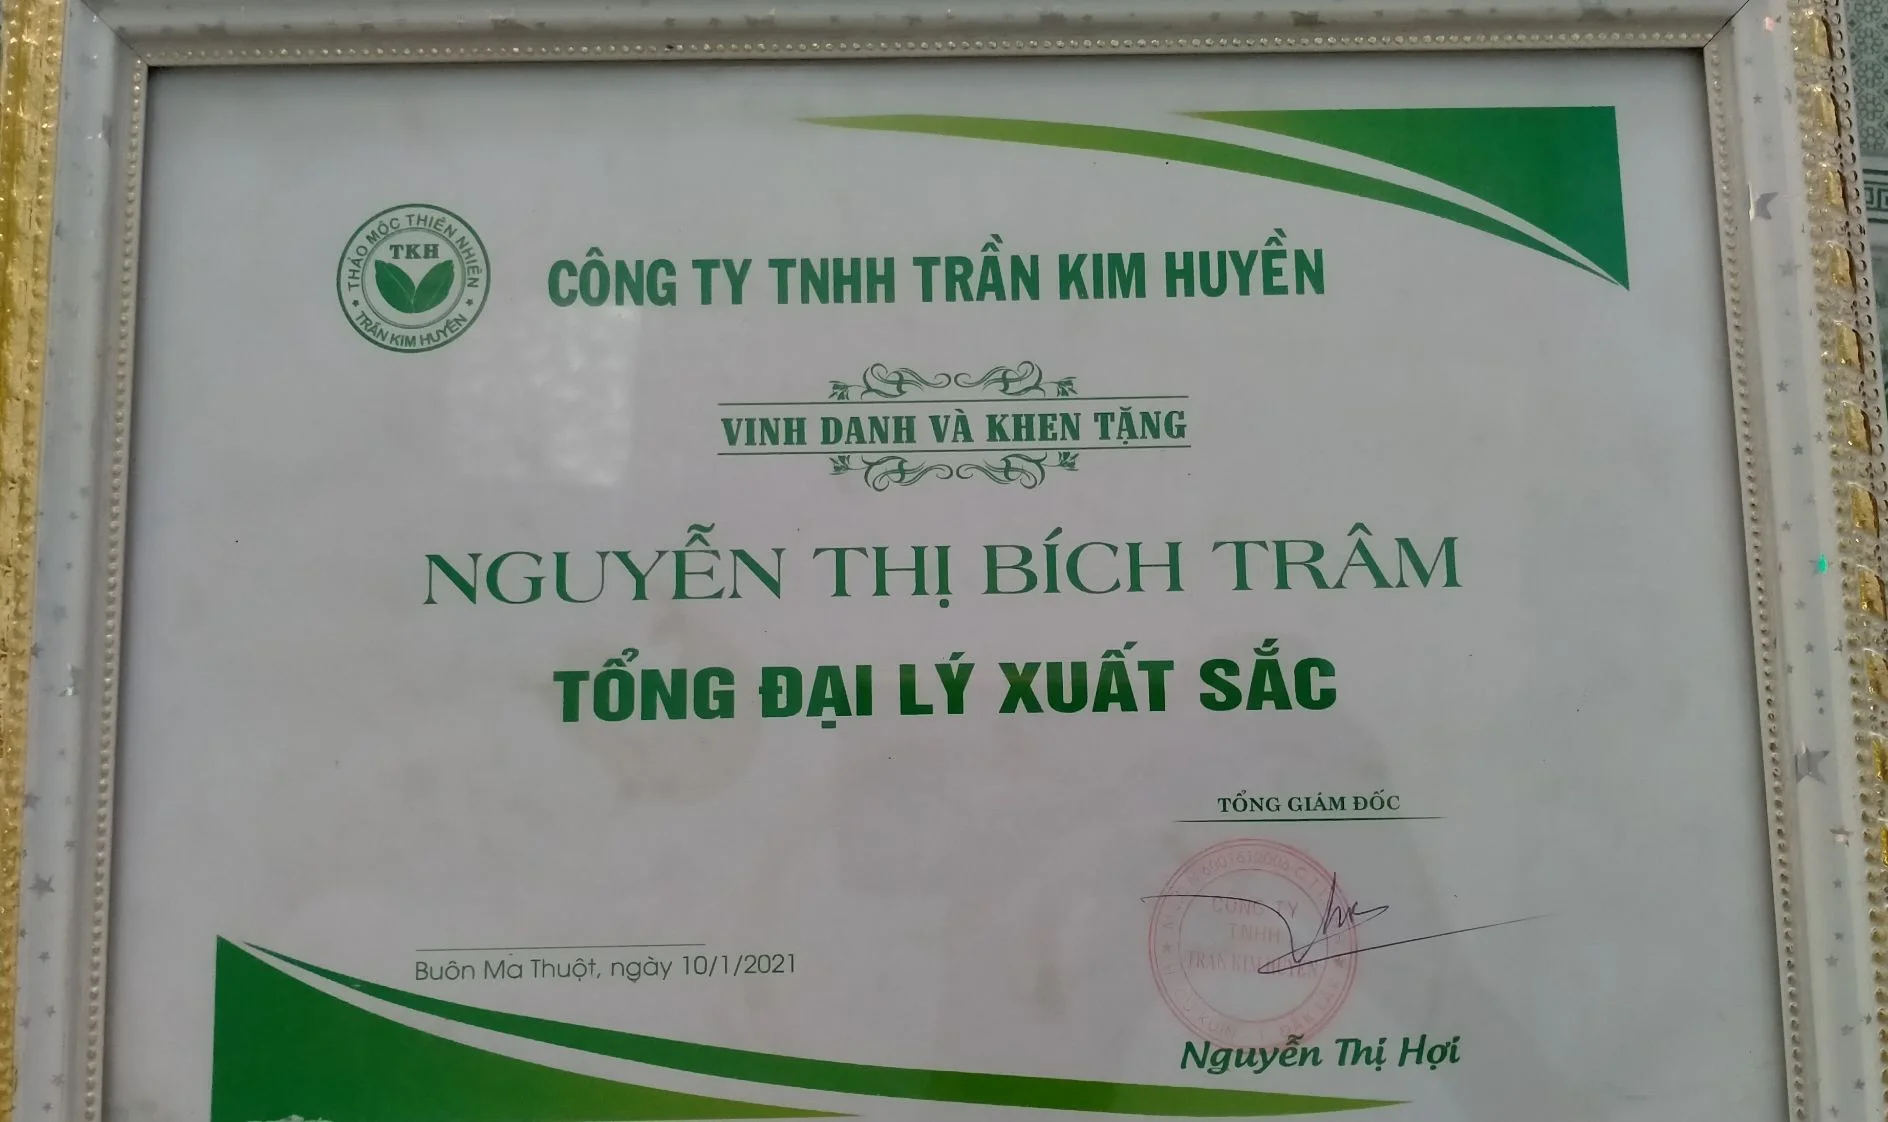 Nguyễn Thị Bích Trâm's cover photo